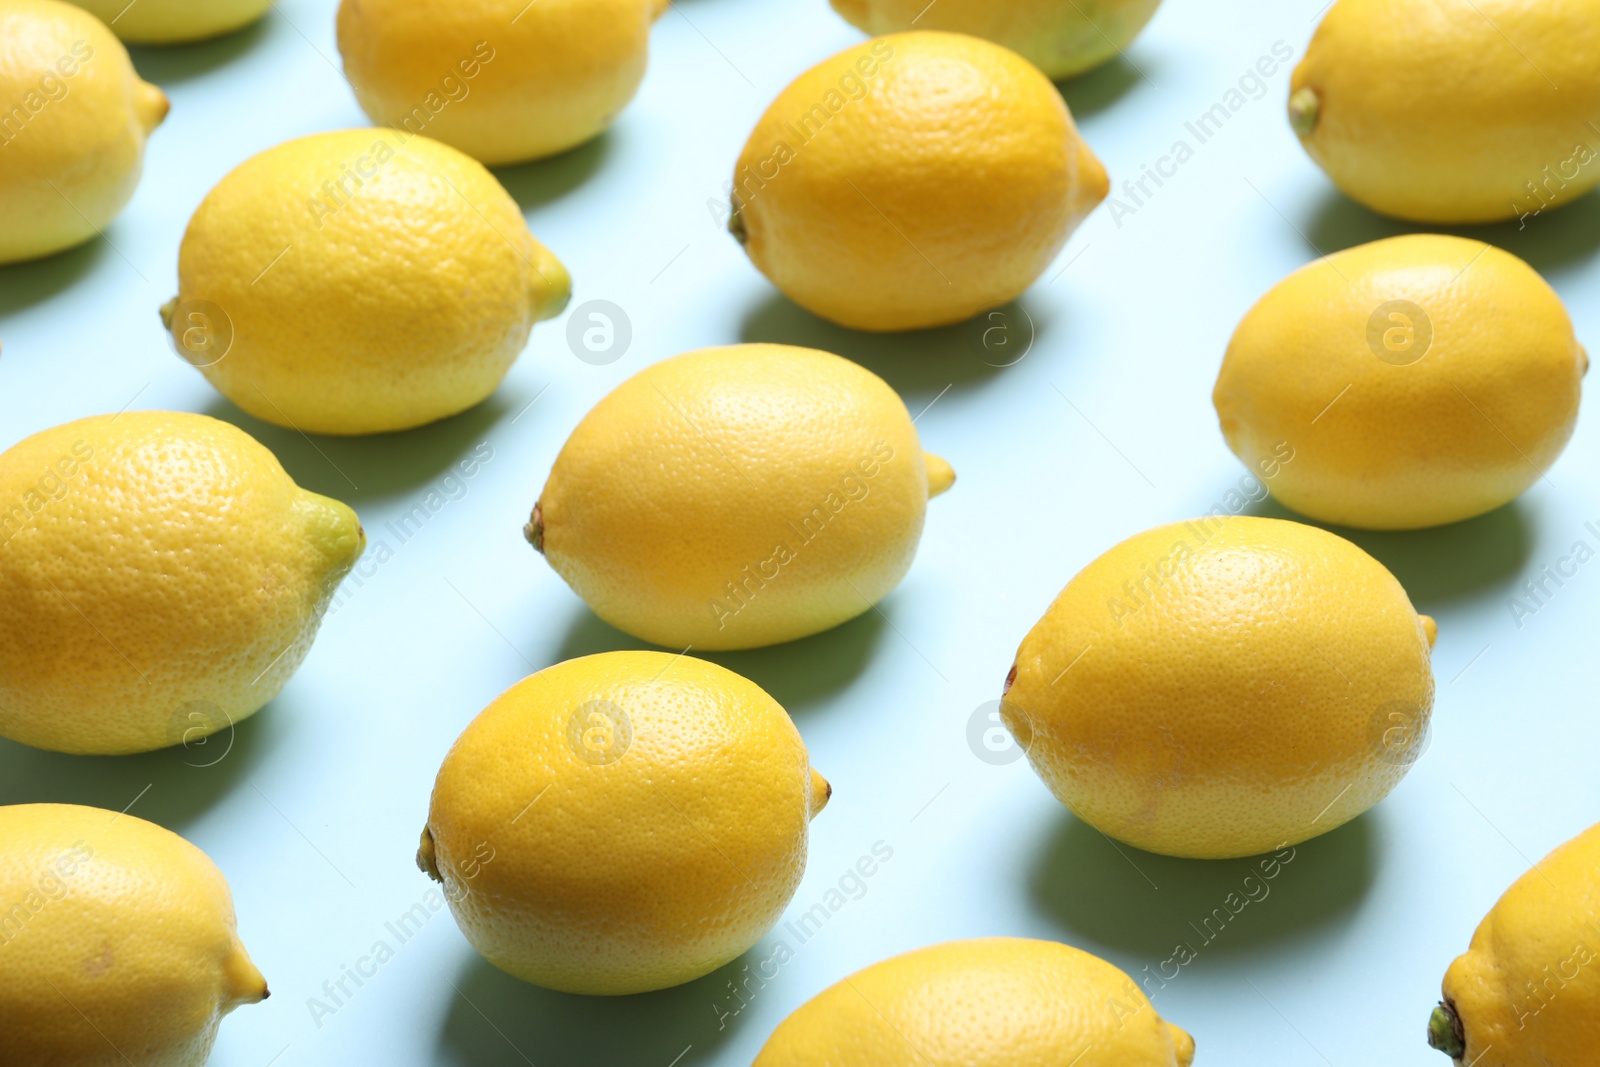 Photo of Many fresh ripe lemons on light blue background